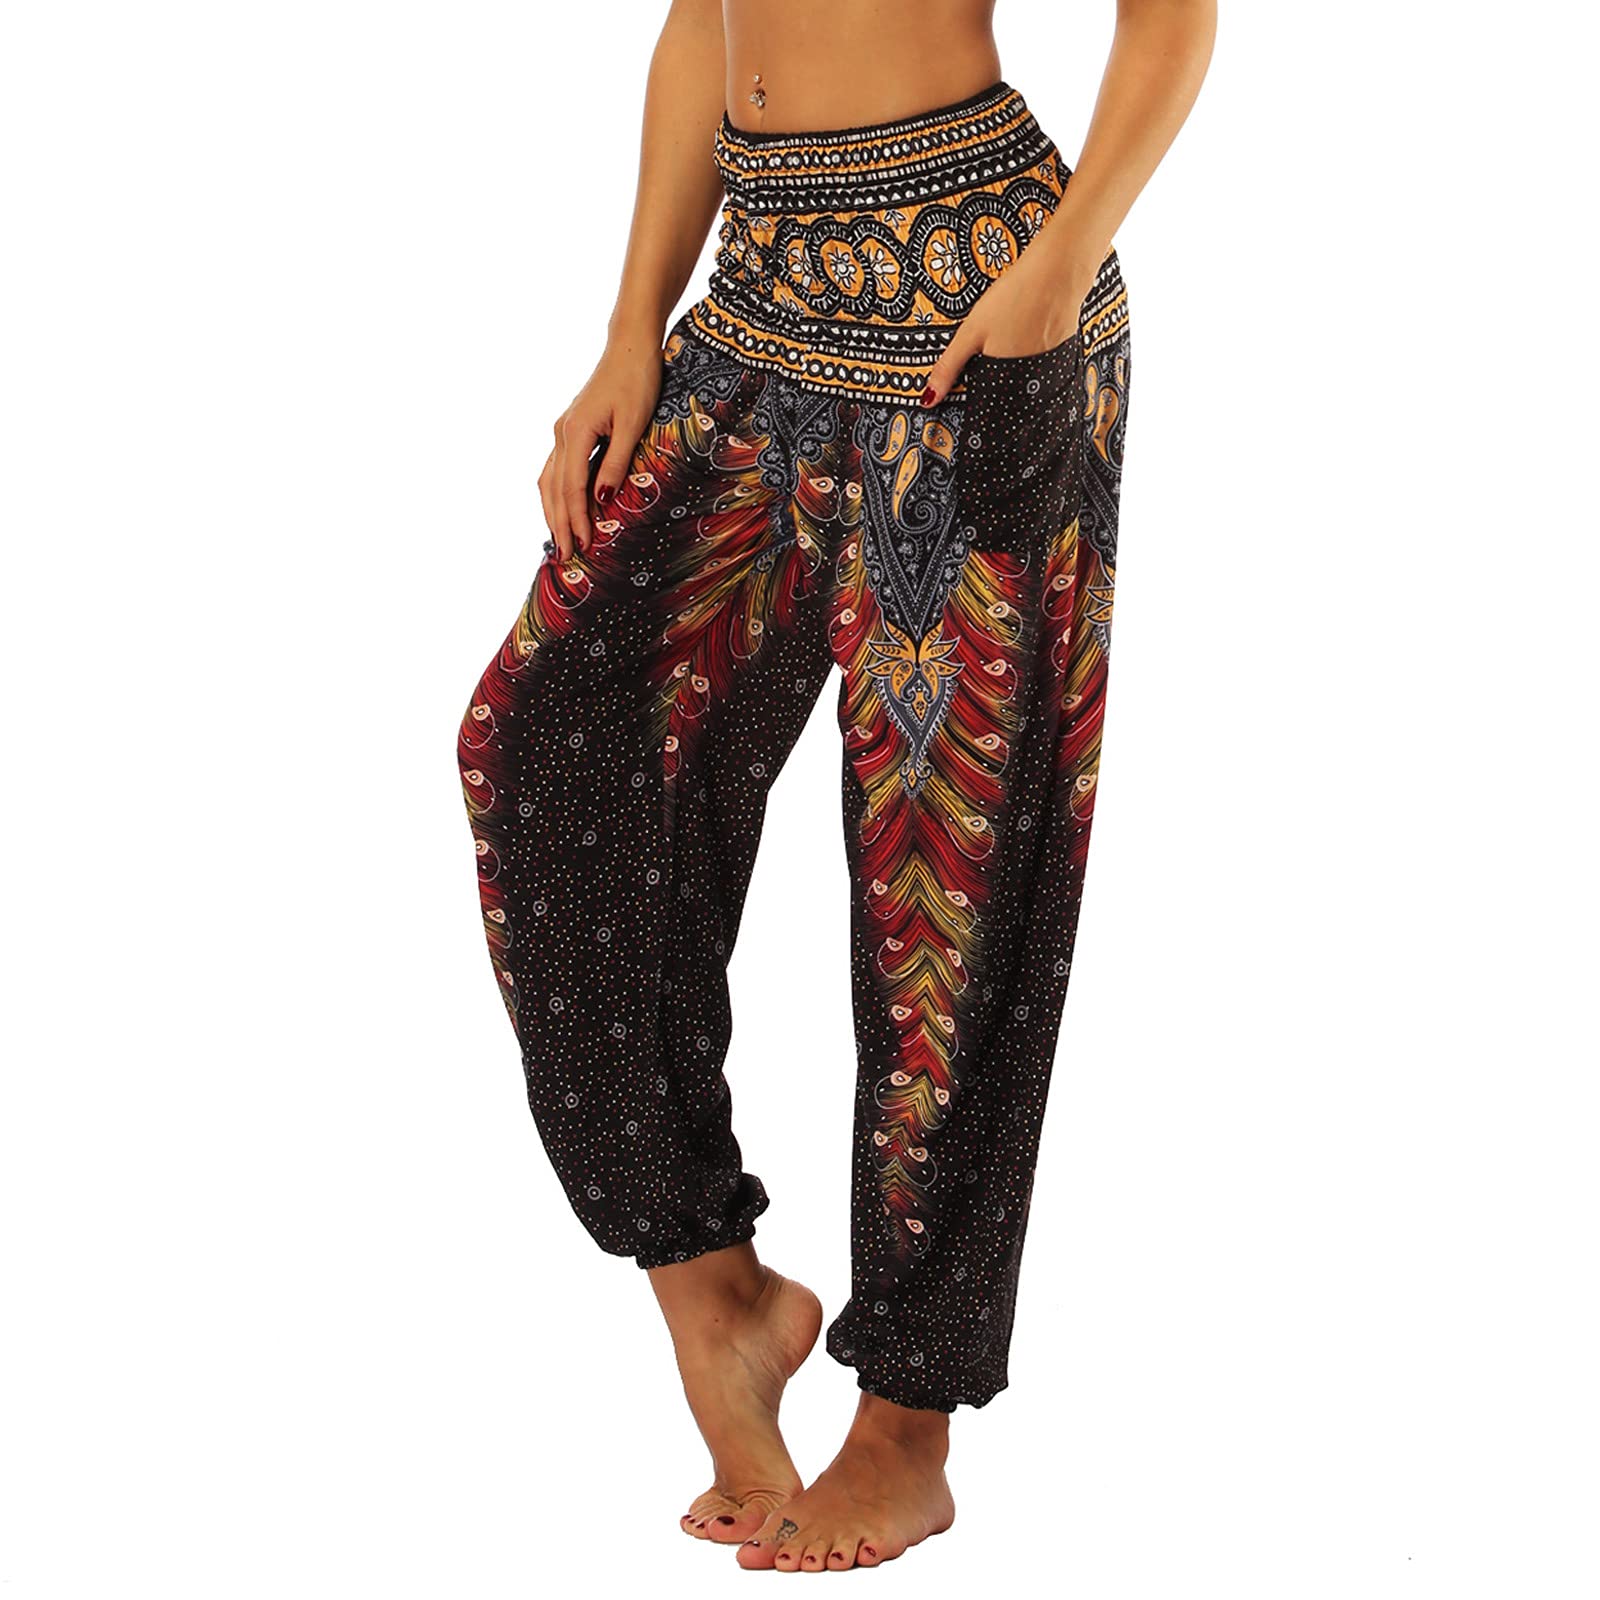 acheter Nuofengkudu Femme Harem Pantalon Yoga Sarouel Legers Hippie Baggy Léger Ethnique Calqué Smockée Taille Haute avec Poches Été Plage yhAqAftYe Haute Quaity